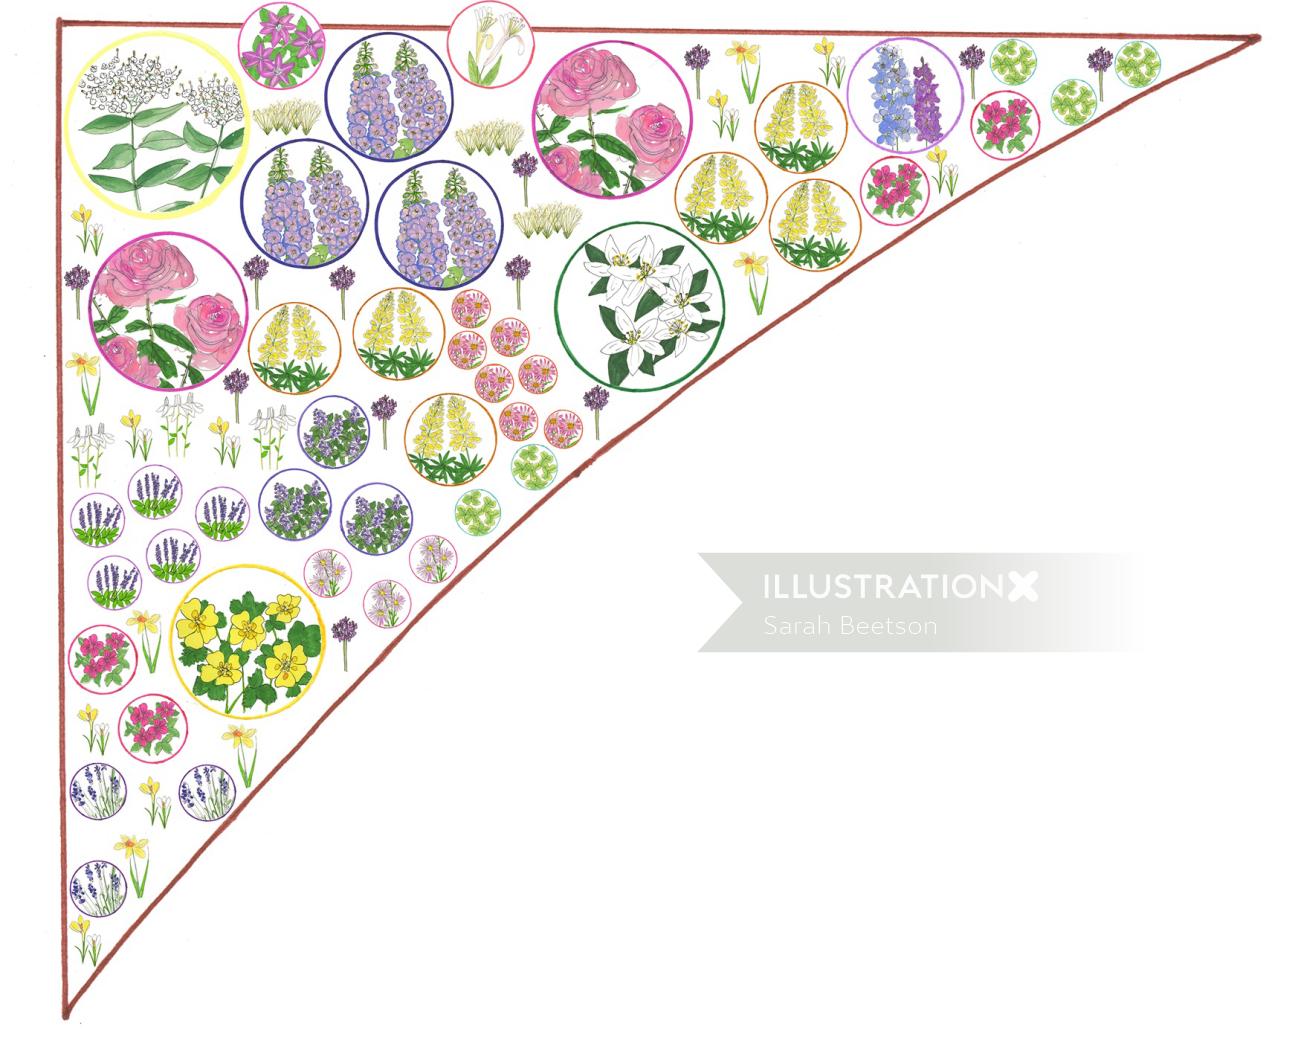 Ilustración de plantas de flores por Sarah Beetson